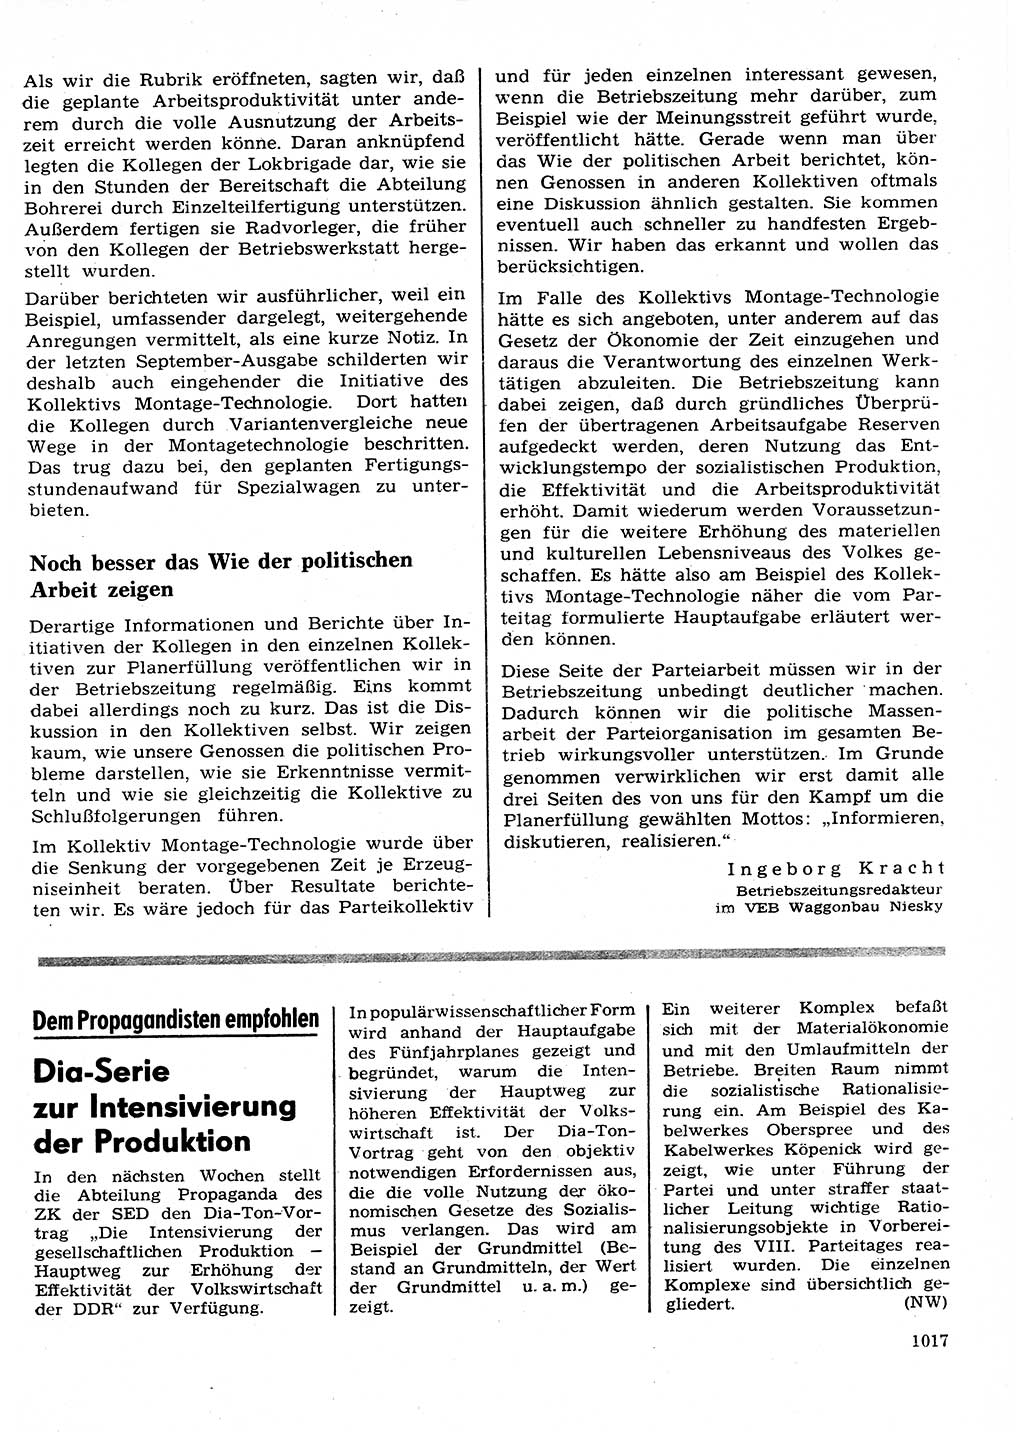 Neuer Weg (NW), Organ des Zentralkomitees (ZK) der SED (Sozialistische Einheitspartei Deutschlands) für Fragen des Parteilebens, 26. Jahrgang [Deutsche Demokratische Republik (DDR)] 1971, Seite 1017 (NW ZK SED DDR 1971, S. 1017)